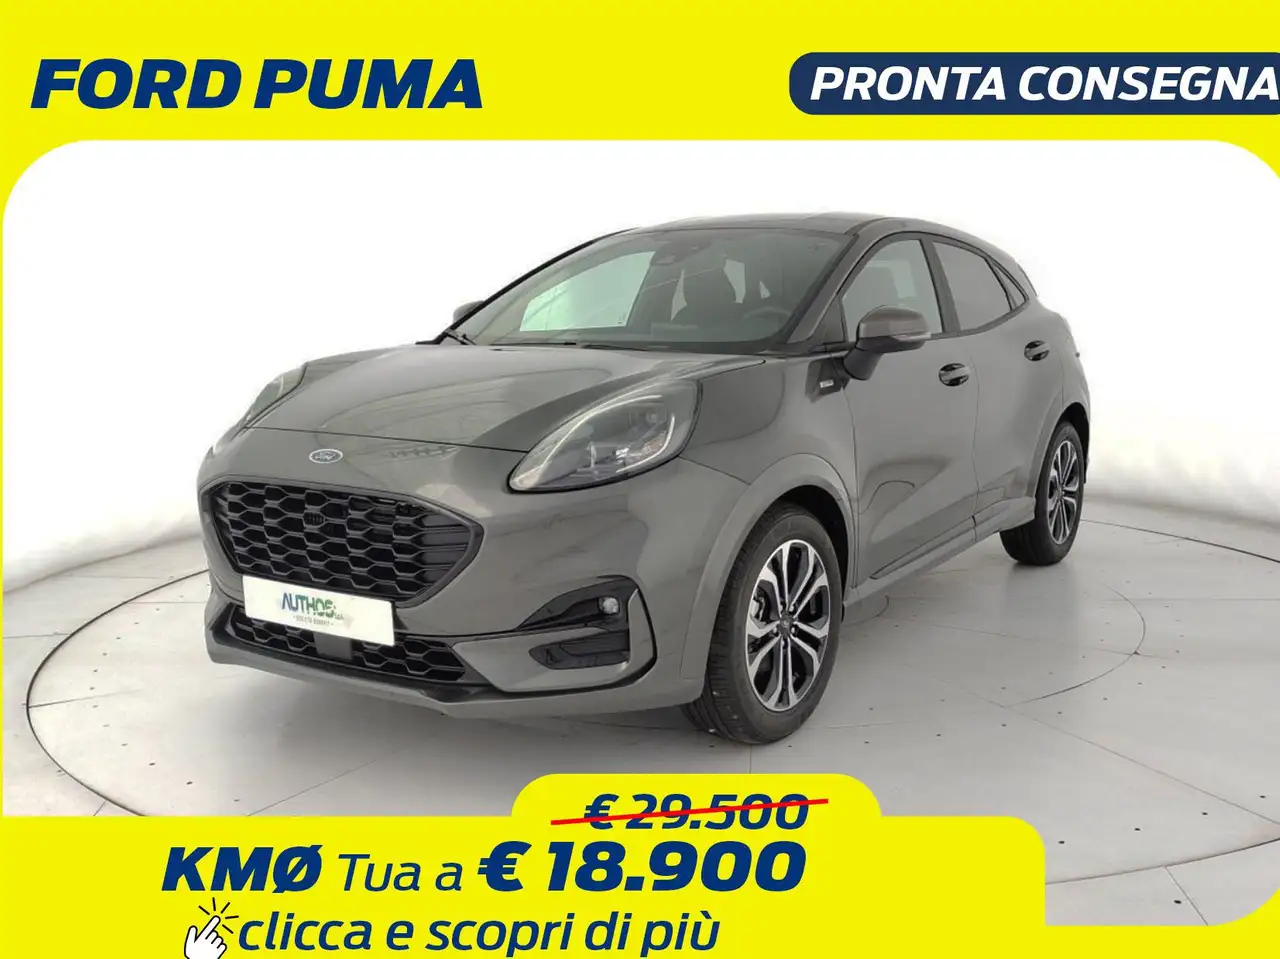 Ford Puma SUV/4x4/Pick-up in Grijs voorinschrijving in Moncalieri - Torino voor € 18.900,-